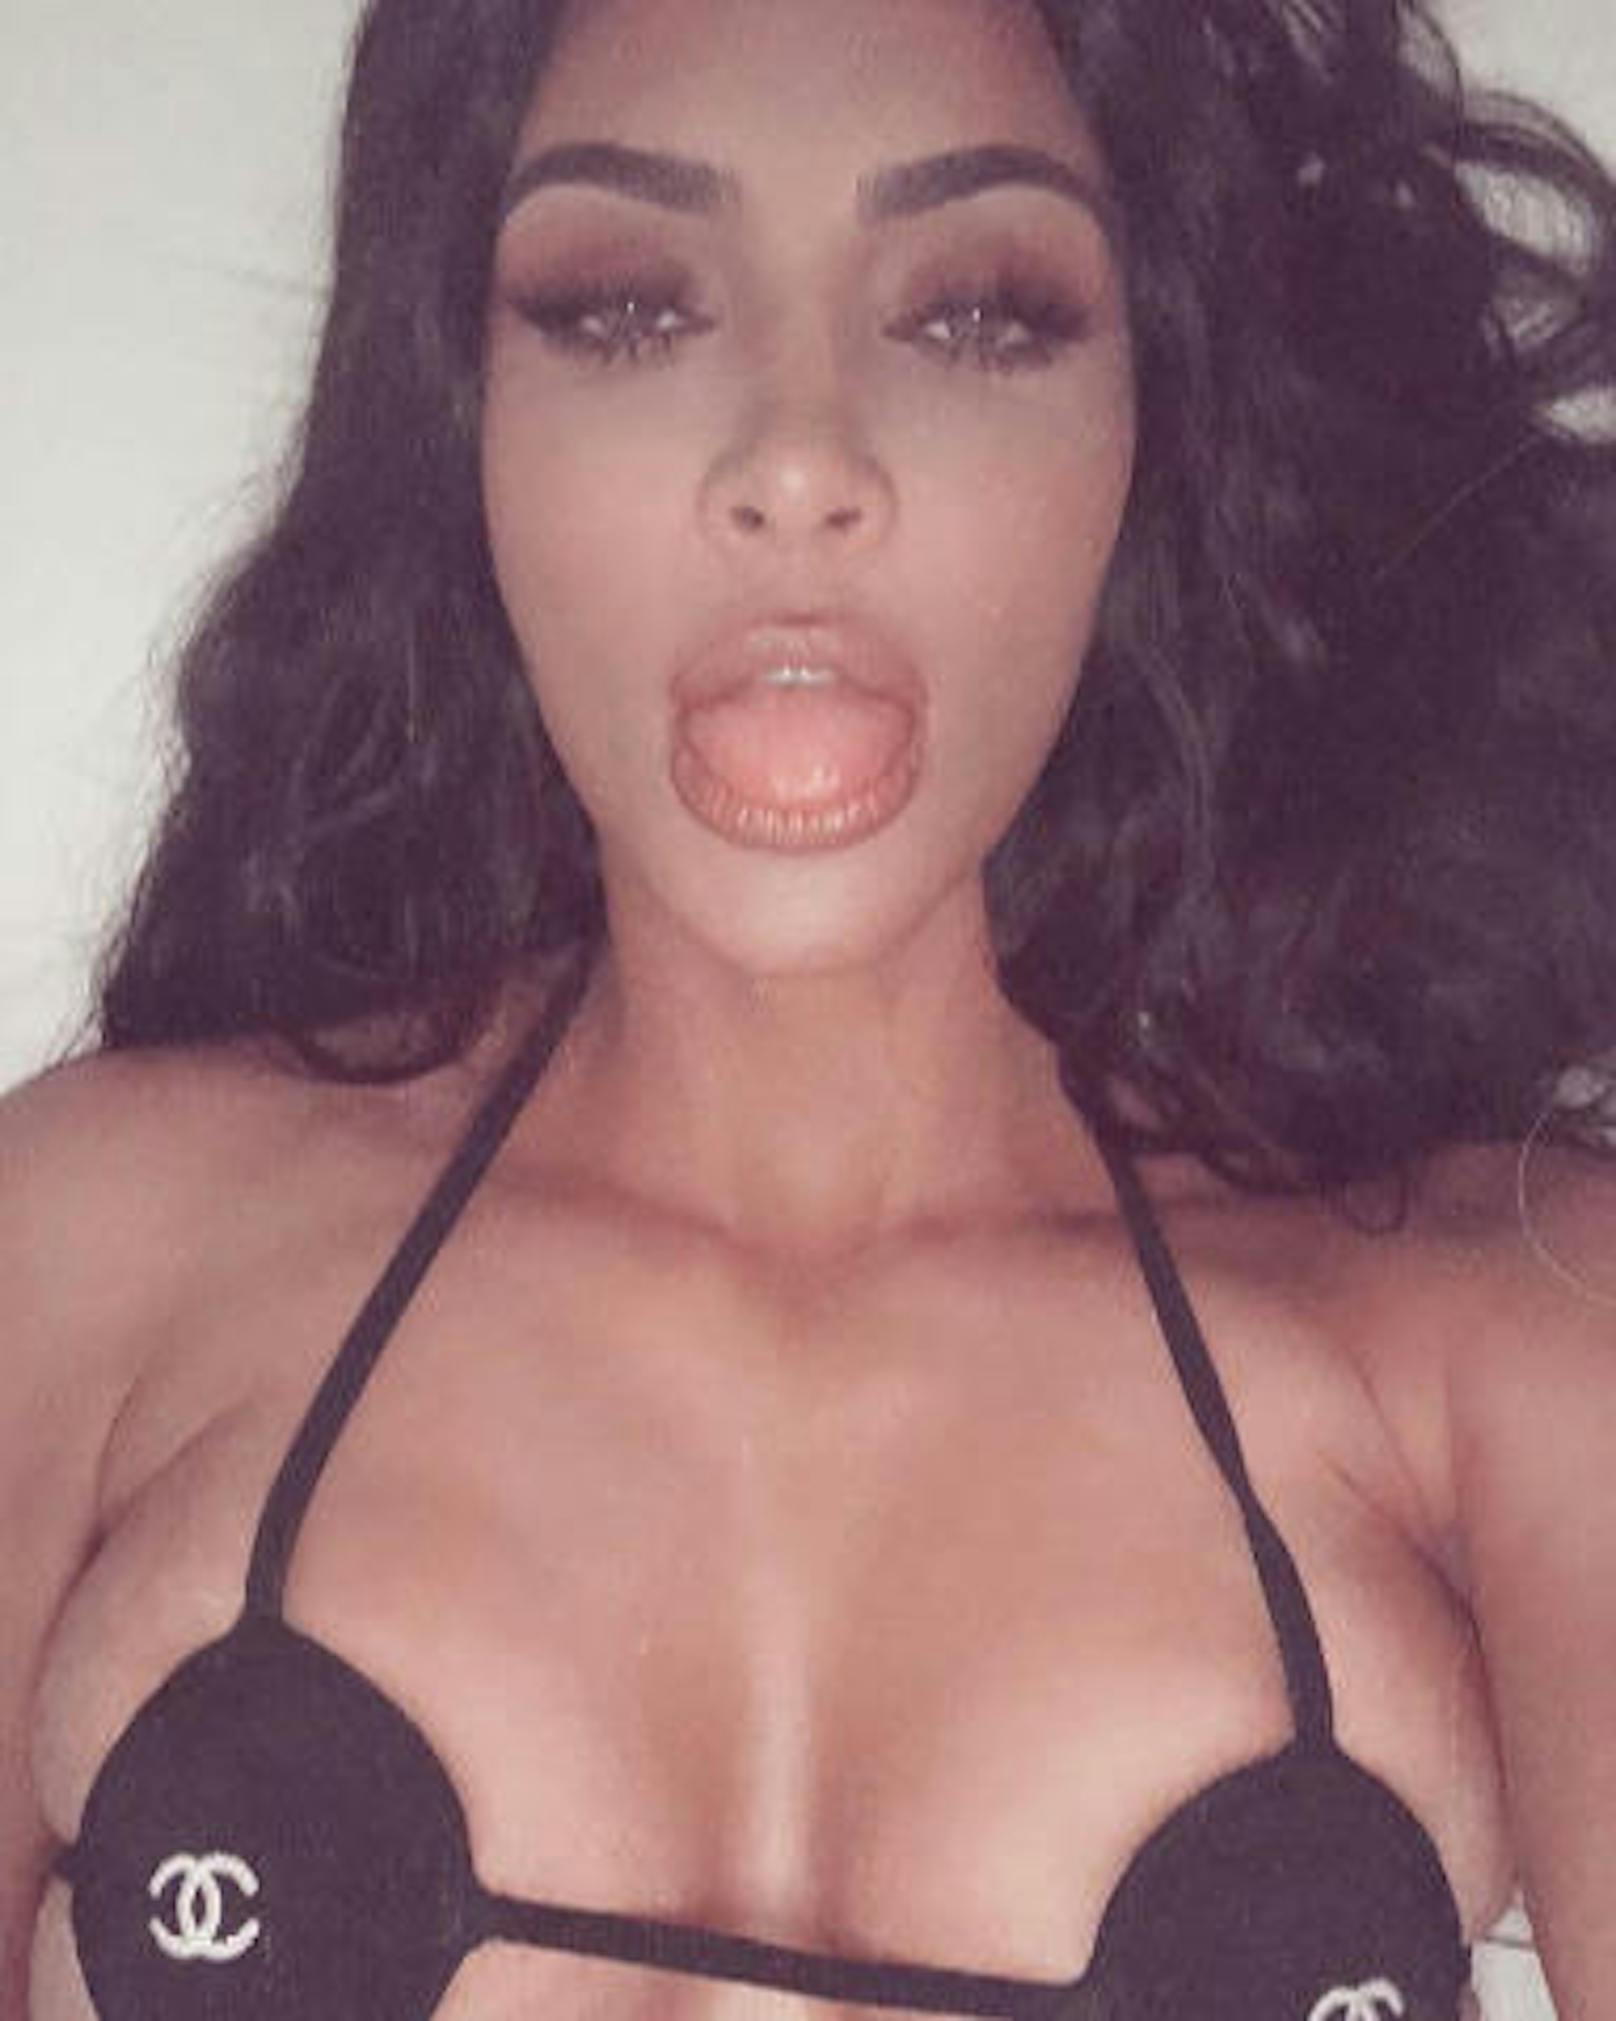 02.10.2018: Kim Kardashian teilte dieses Foto auf Instagram, um ihren Ehemann Kanye zu ärgern. Er will nämlich entscheiden, welche Fotos sie in den sozialen Netzwerken postete. <a href="https://www.heute.at/people/stars/story/Kim-Kardashian-Kanye-West-Instagram-Streit-Foto-41292906">Den Artikel dazu finden Sie HIER</a>